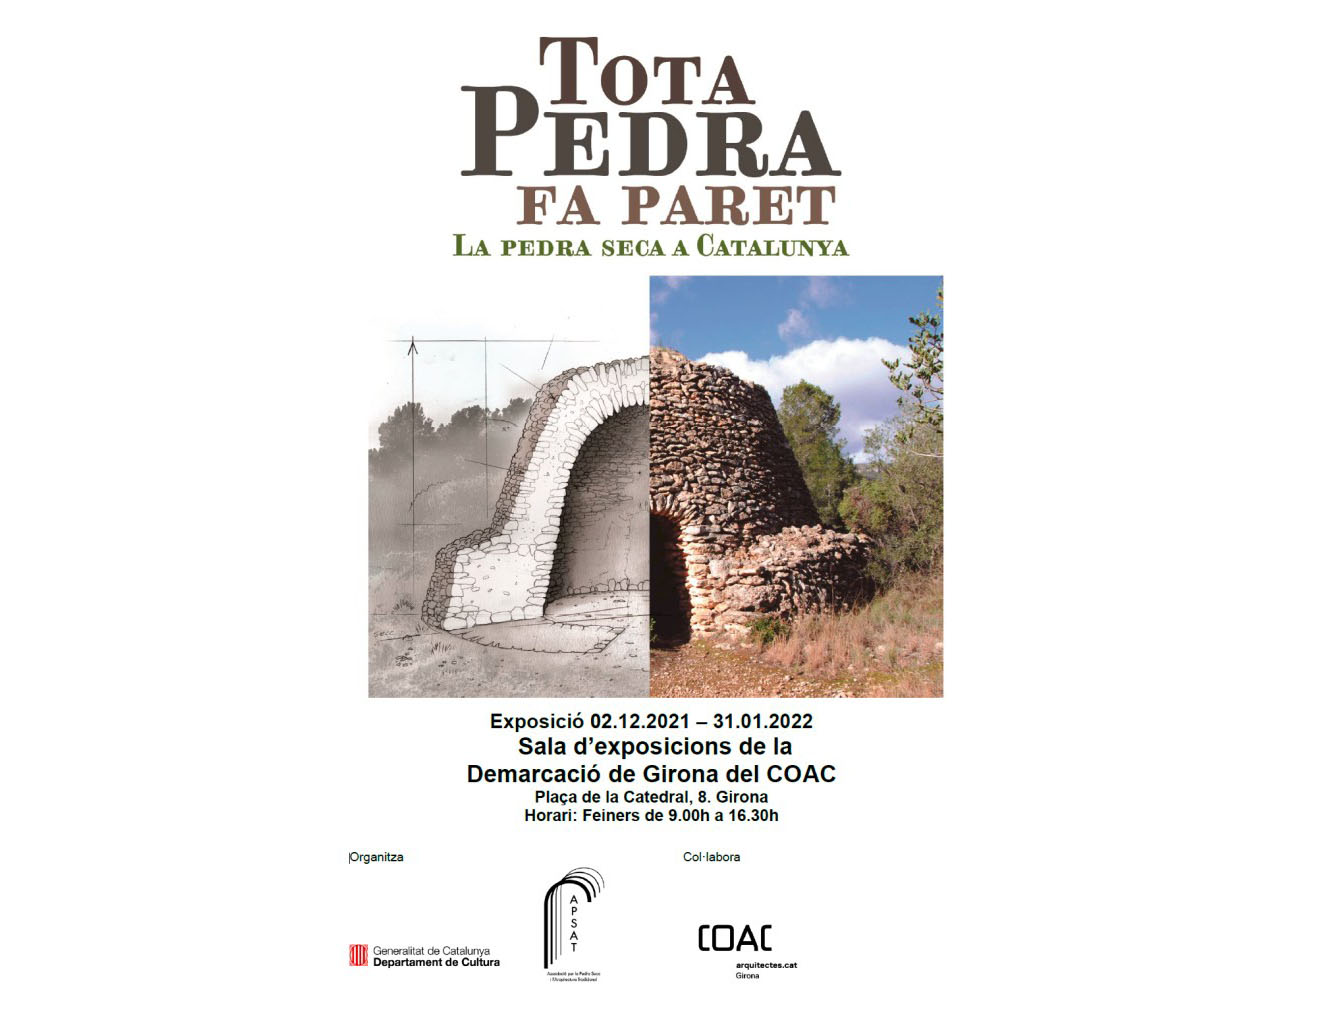 L'exposició "Tota pedra fa paret. La pedra seca a Catalunya" arriba a Girona